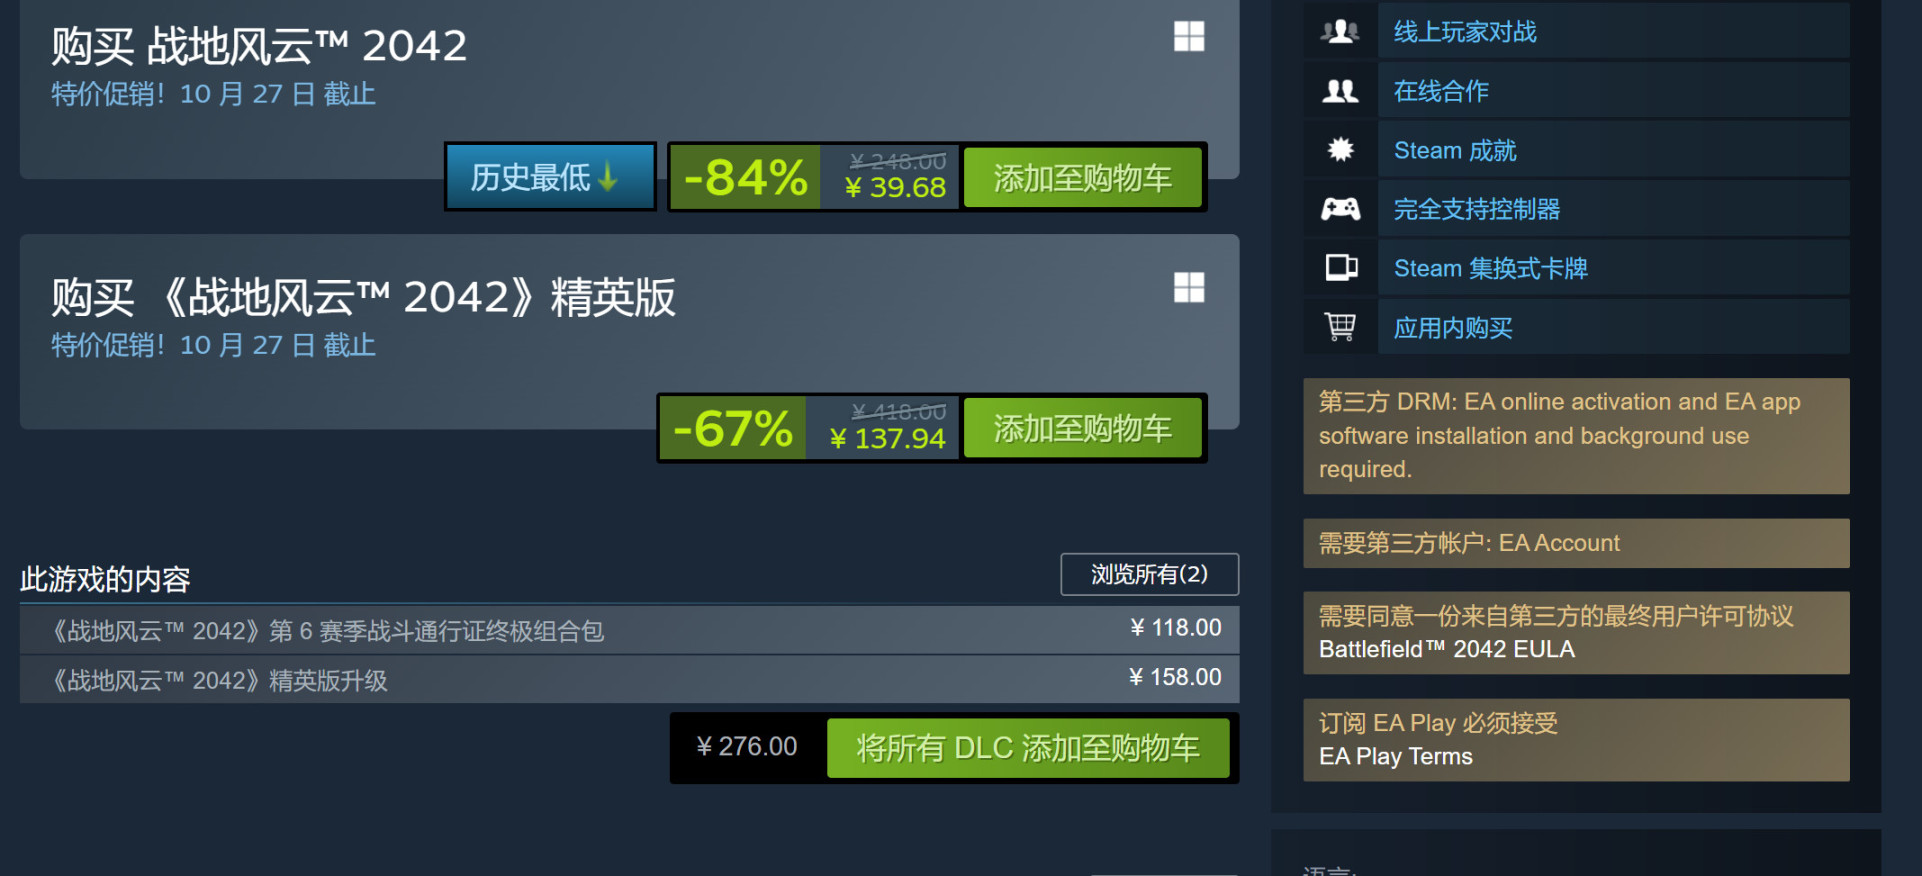 《战地2042》免费结束后 Steam在线峰值仍接近10万-第2张